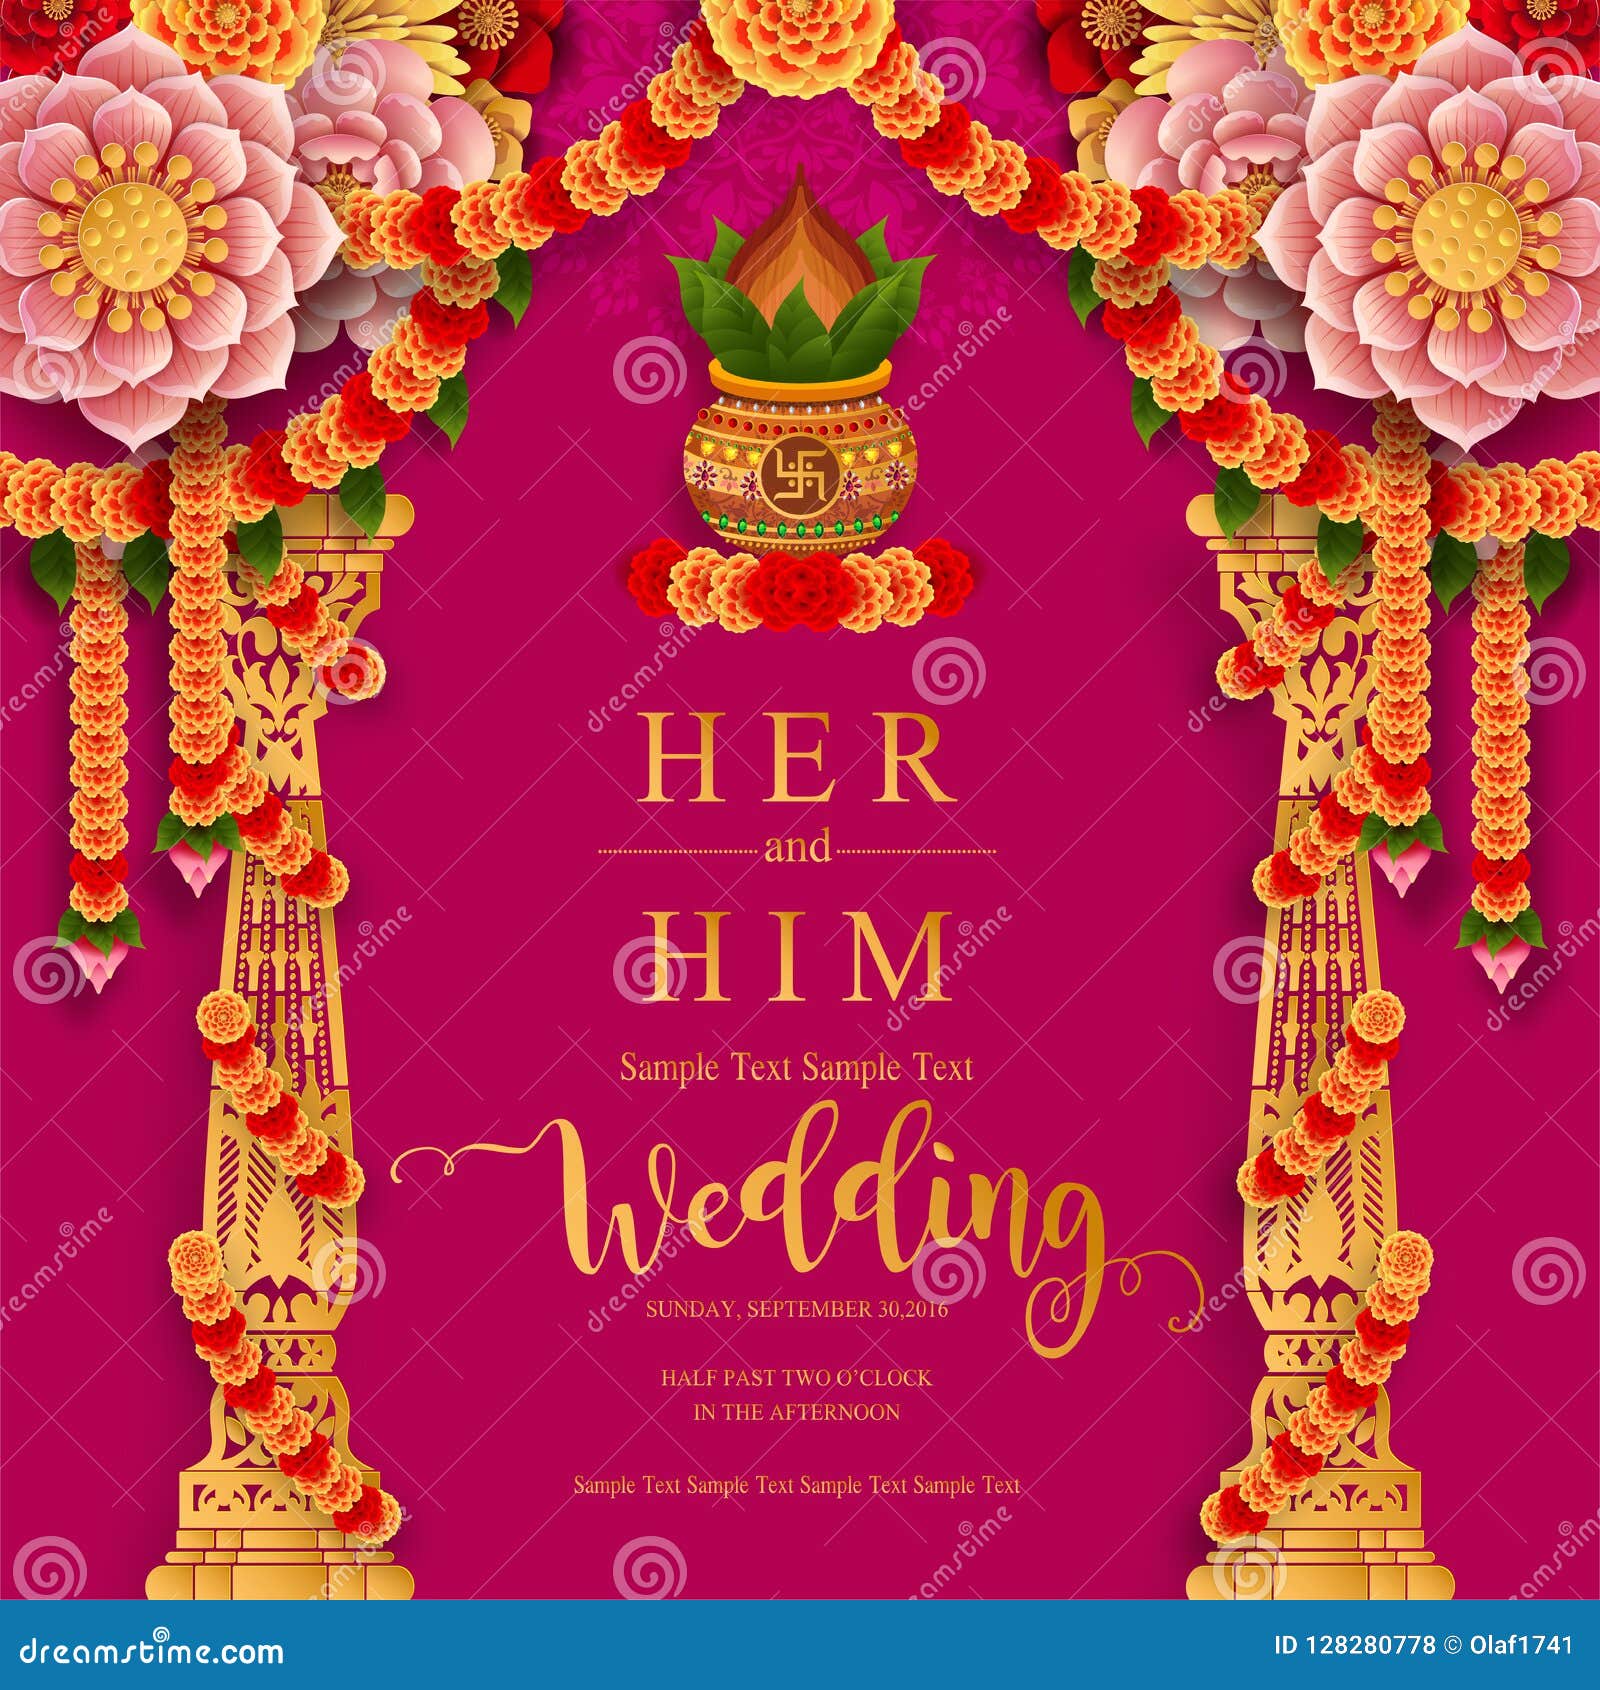 Thẻ mời đám cưới Ấn Độ (Indian wedding invitation card) Thiết kế thẻ mời đám cưới Ấn Độ độc đáo, tinh tế và đầy màu sắc. Chúng được làm bằng các chất liệu cao cấp và được thiết kế với sự tận tâm. Thẻ mời đám cưới Ấn Độ giúp bạn truyền tải đầy đủ thông tin về lễ cưới của mình, mang đến một ngày đặc biệt trọn vẹn và hoàn hảo.